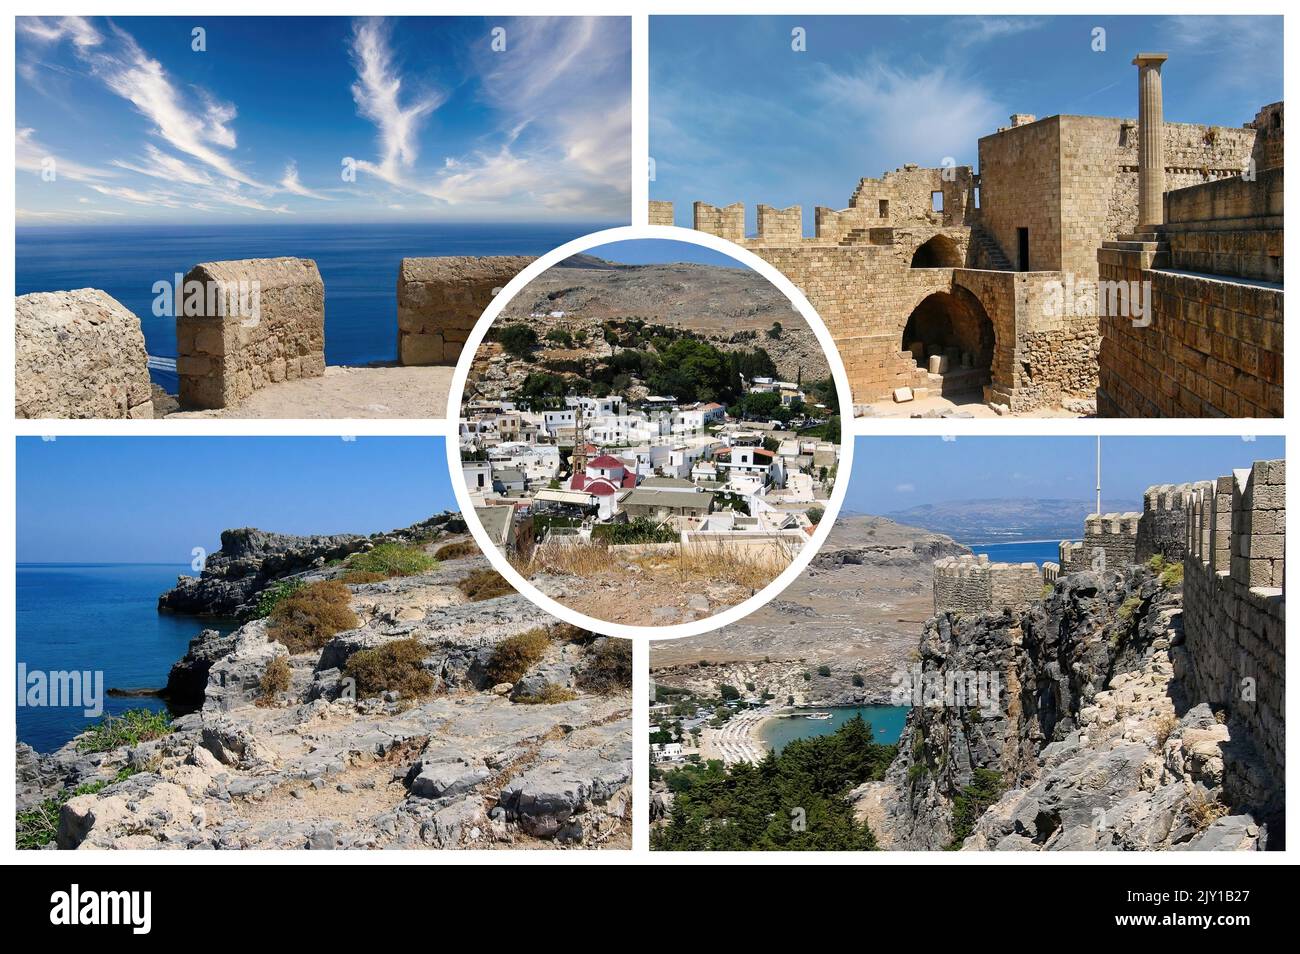 L'île de Rhodes ln Grèce, avec sa mer cristalline et ses sites archéologiques est l'une des destinations touristiques européennes les plus importantes Banque D'Images